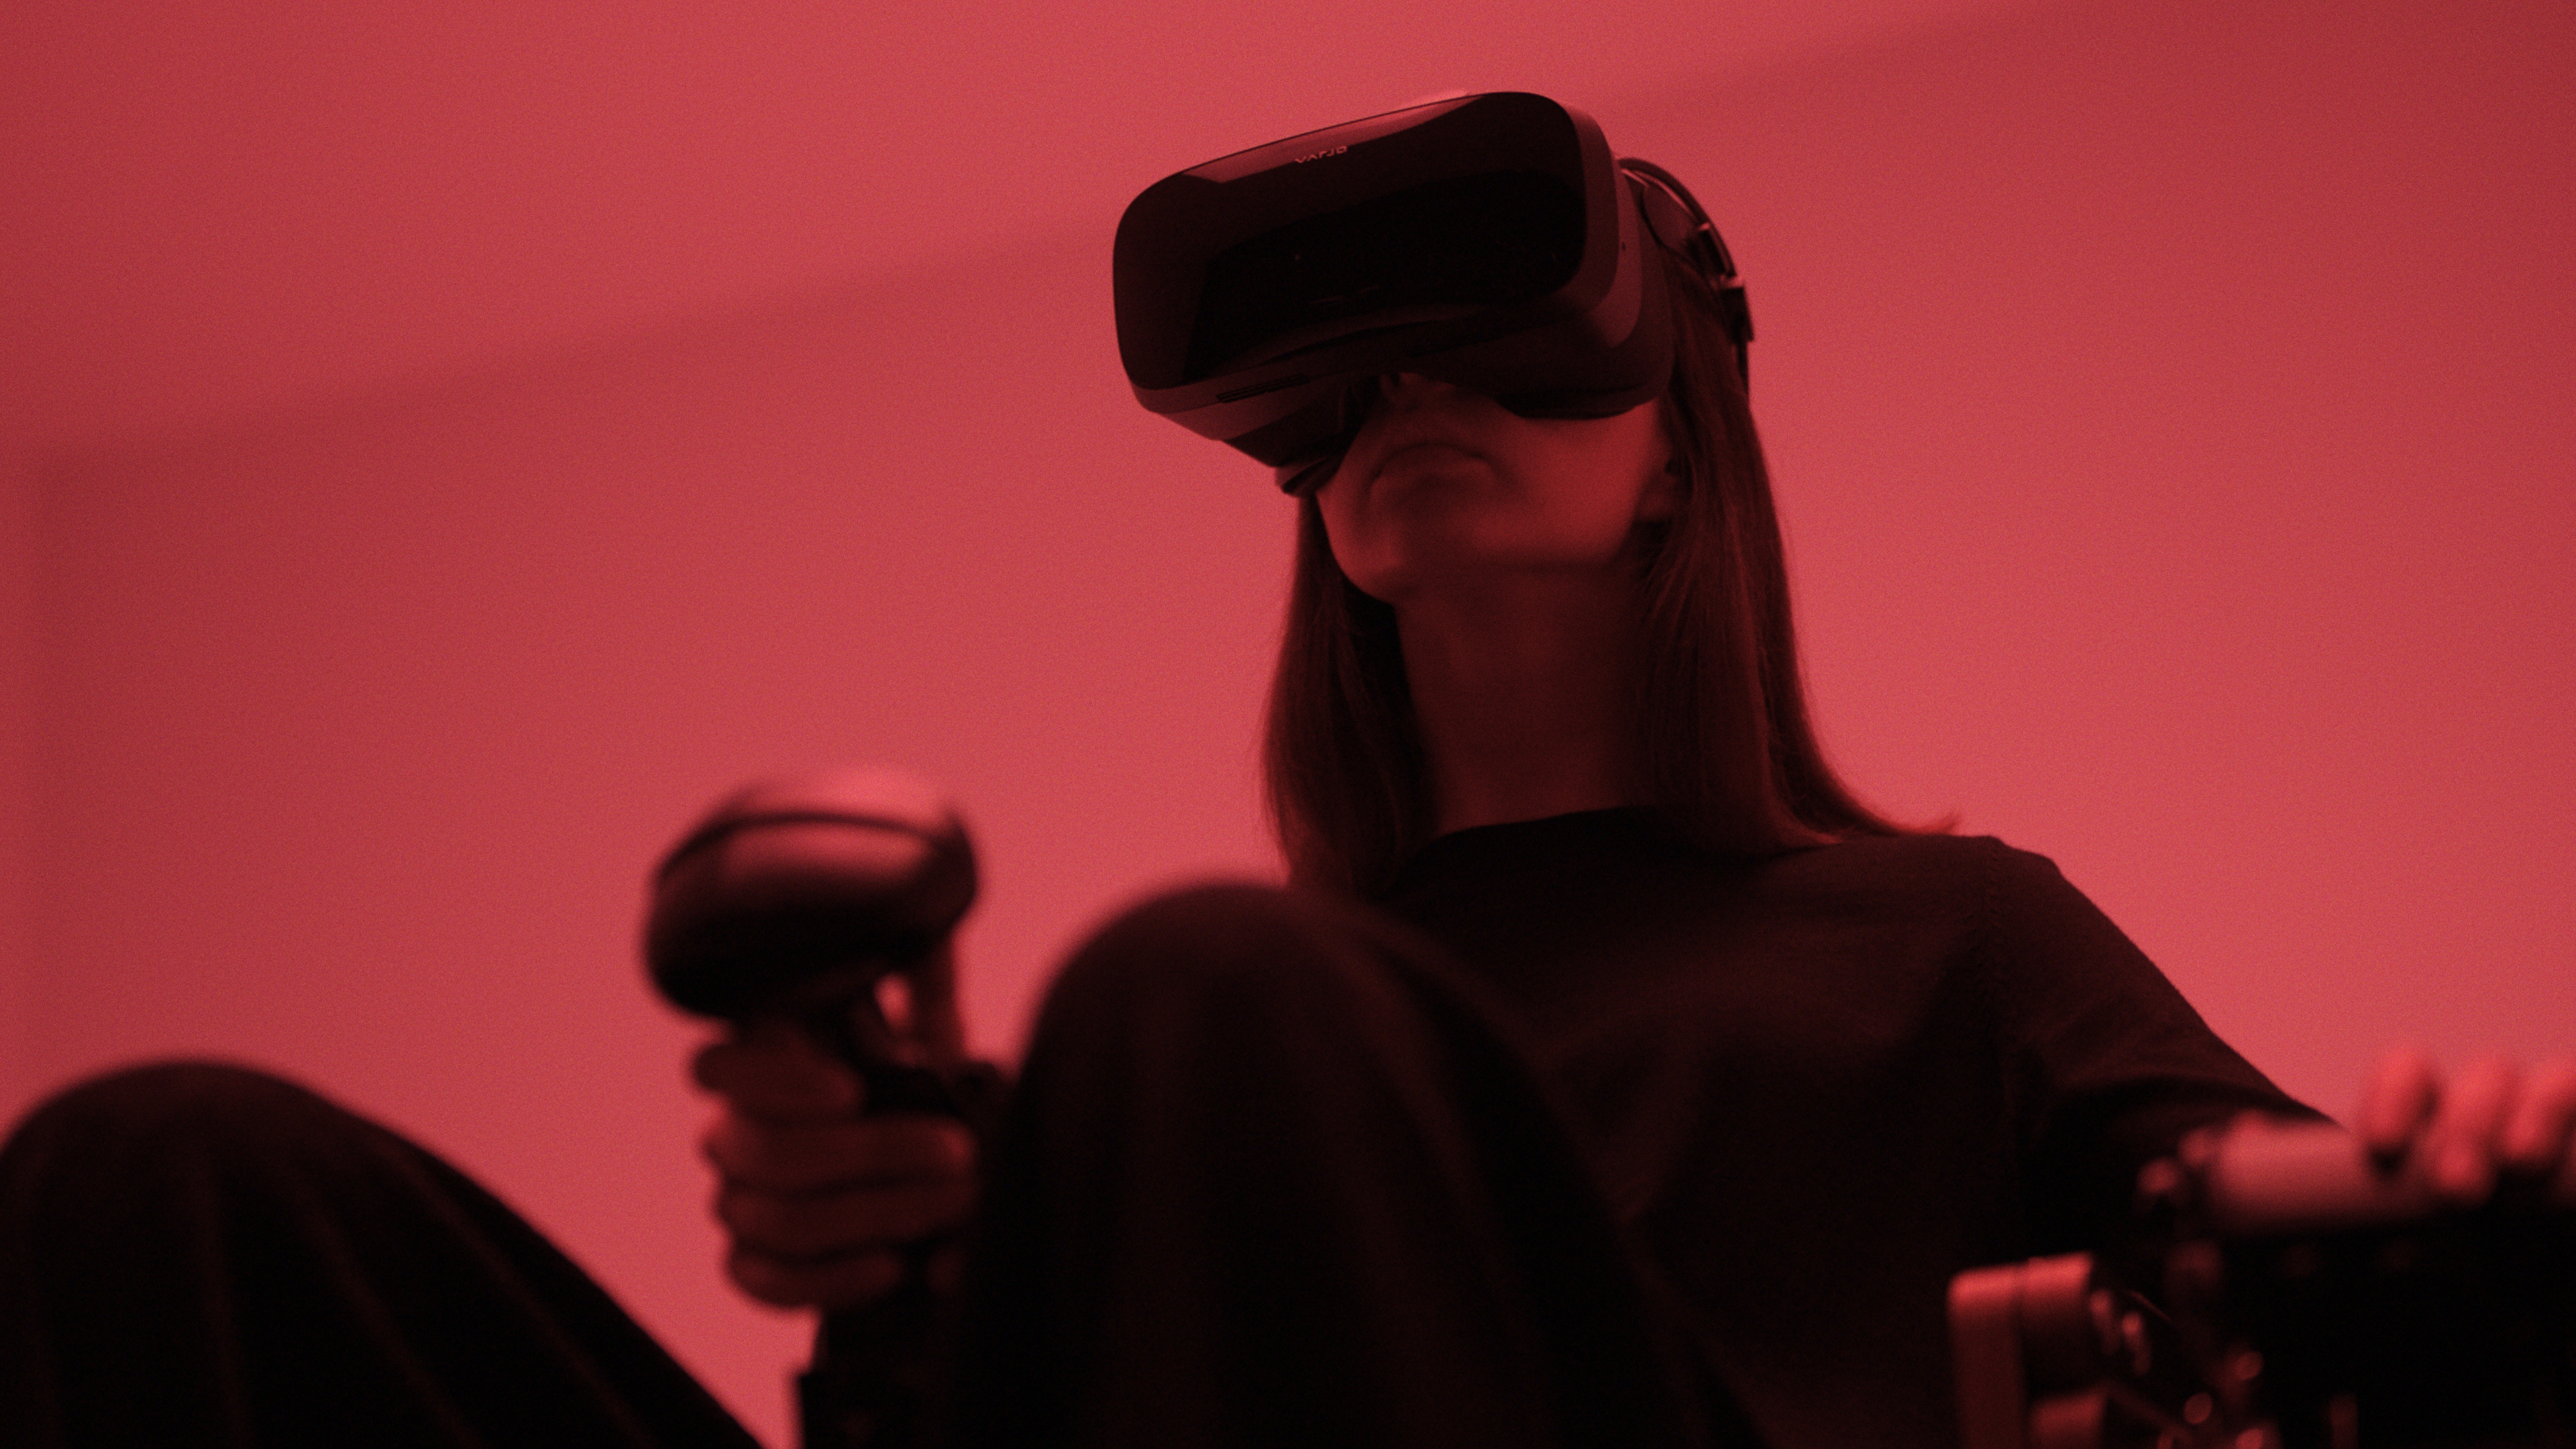 VR flight sim; virtual and mixed reality